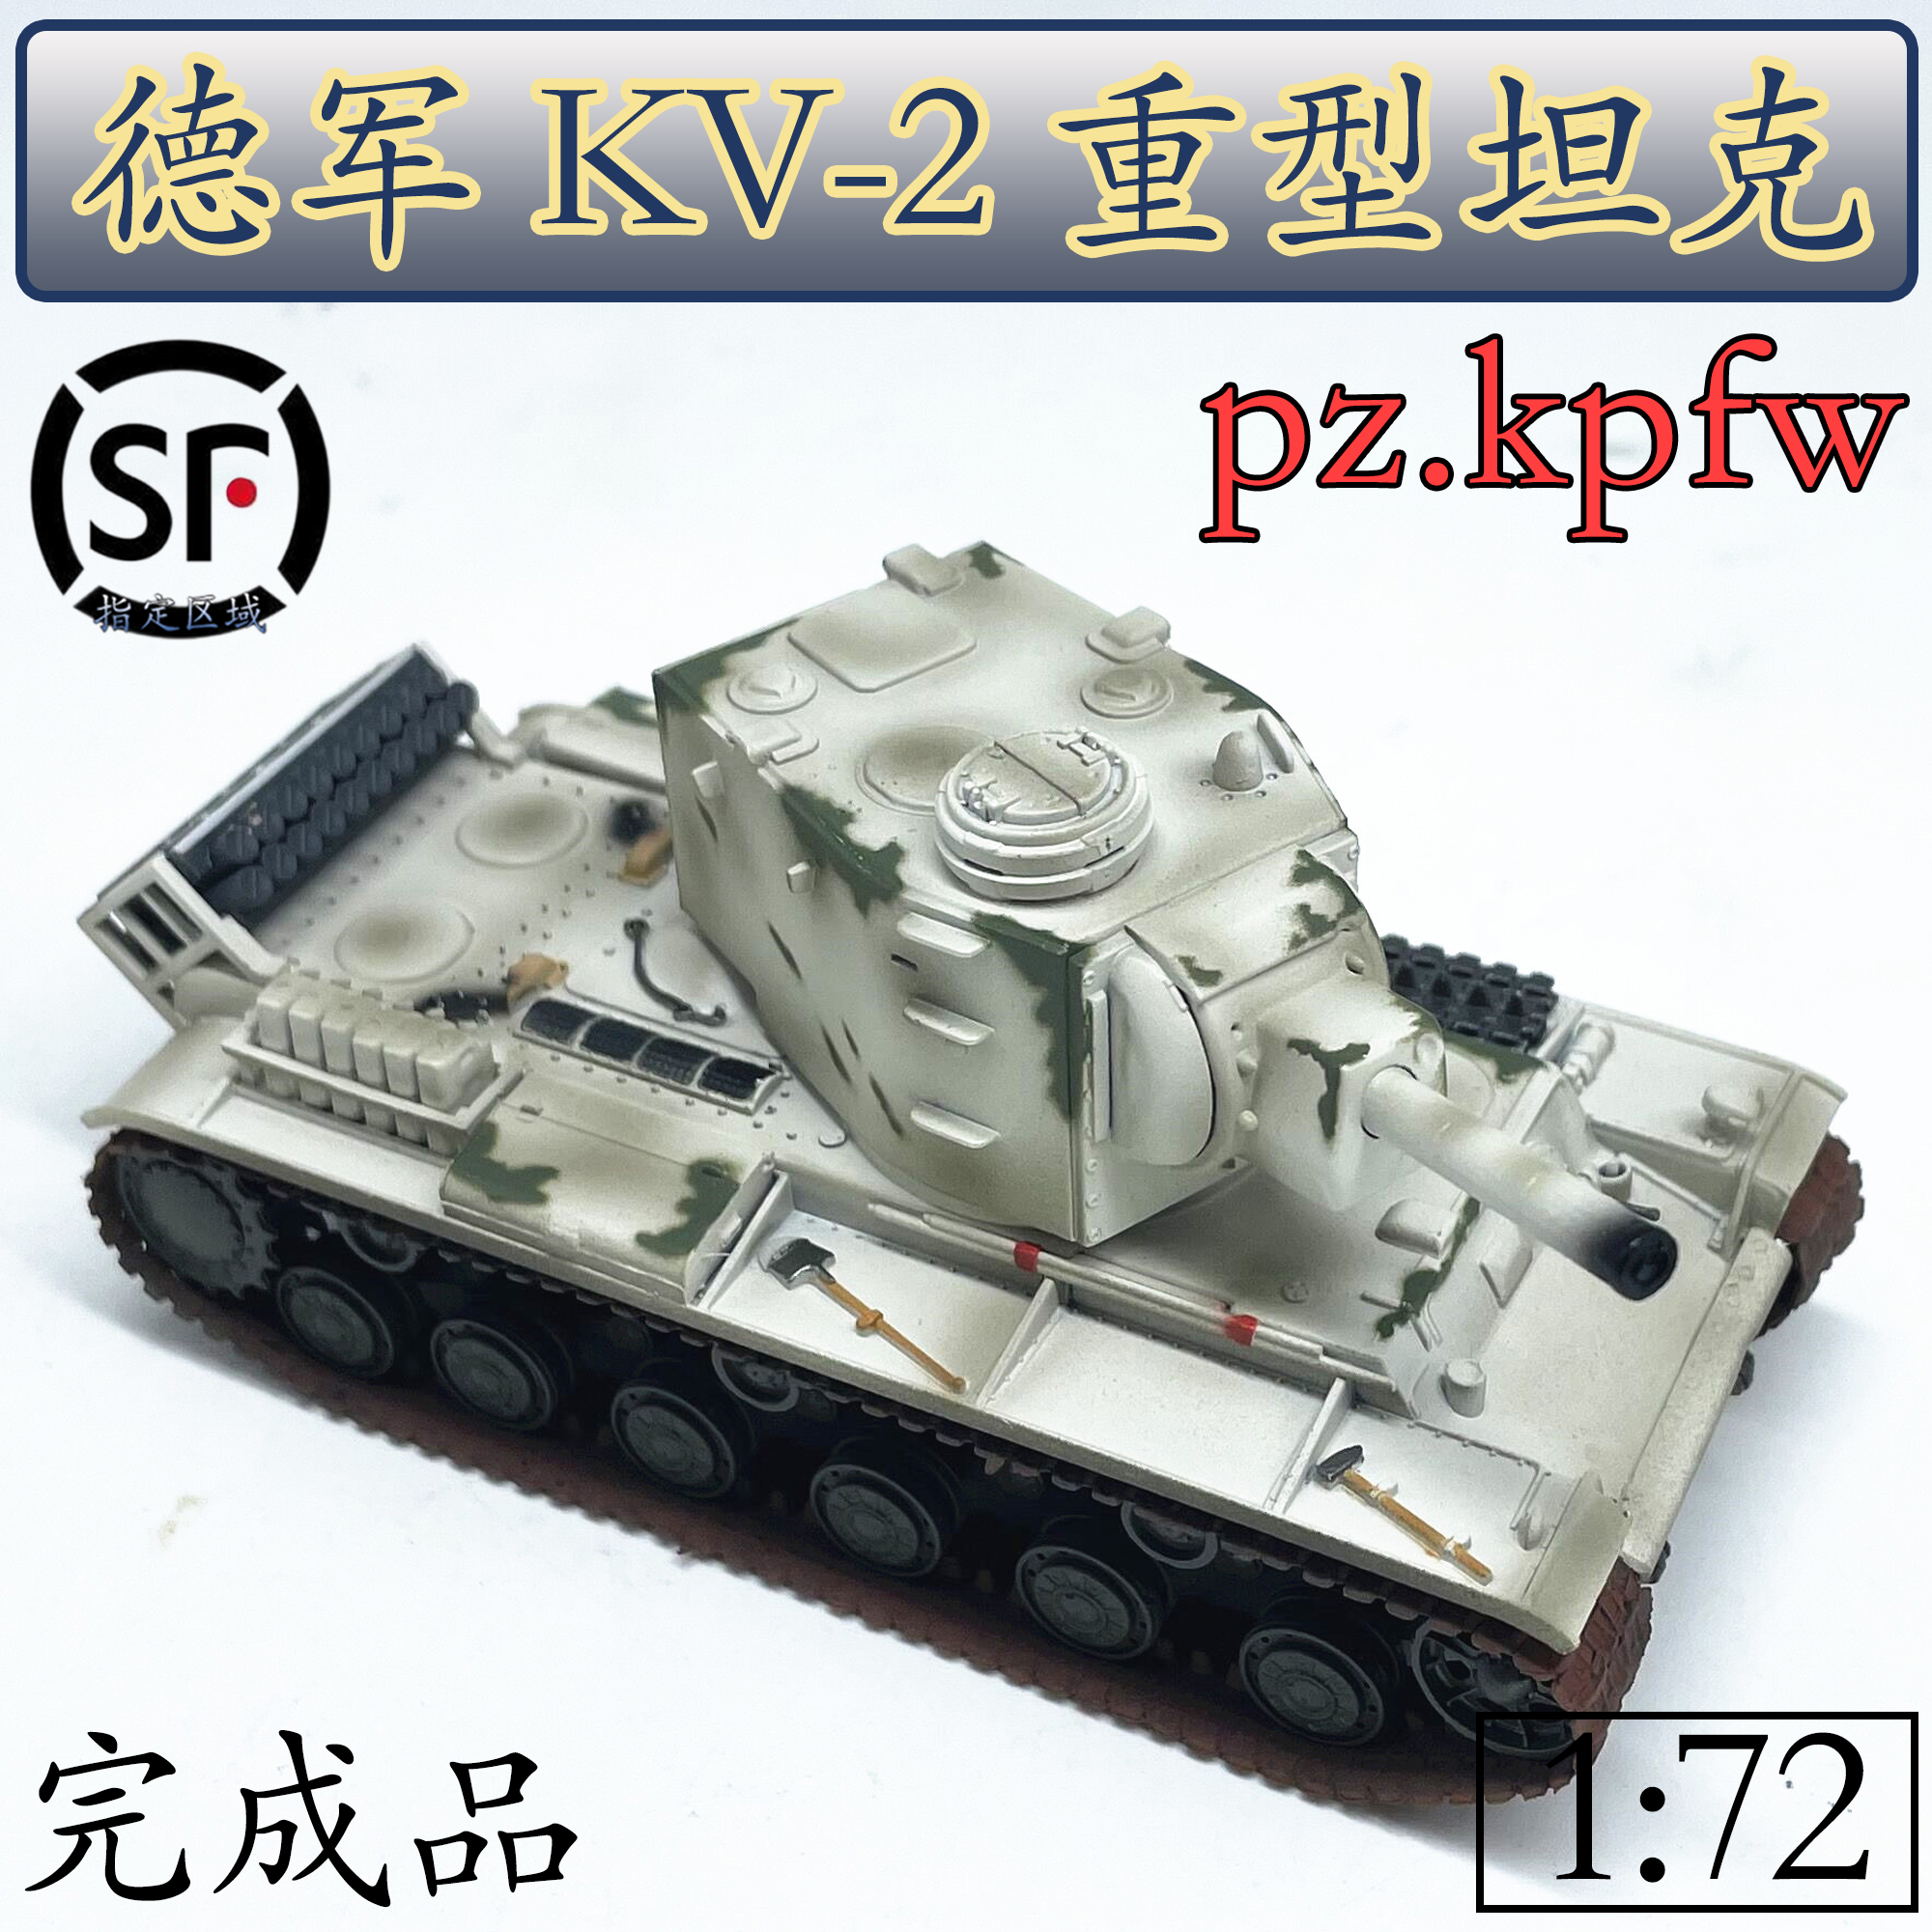 1:72 二战德军 缴获 KV-2 重型坦克模型 小号手成品模型 36286